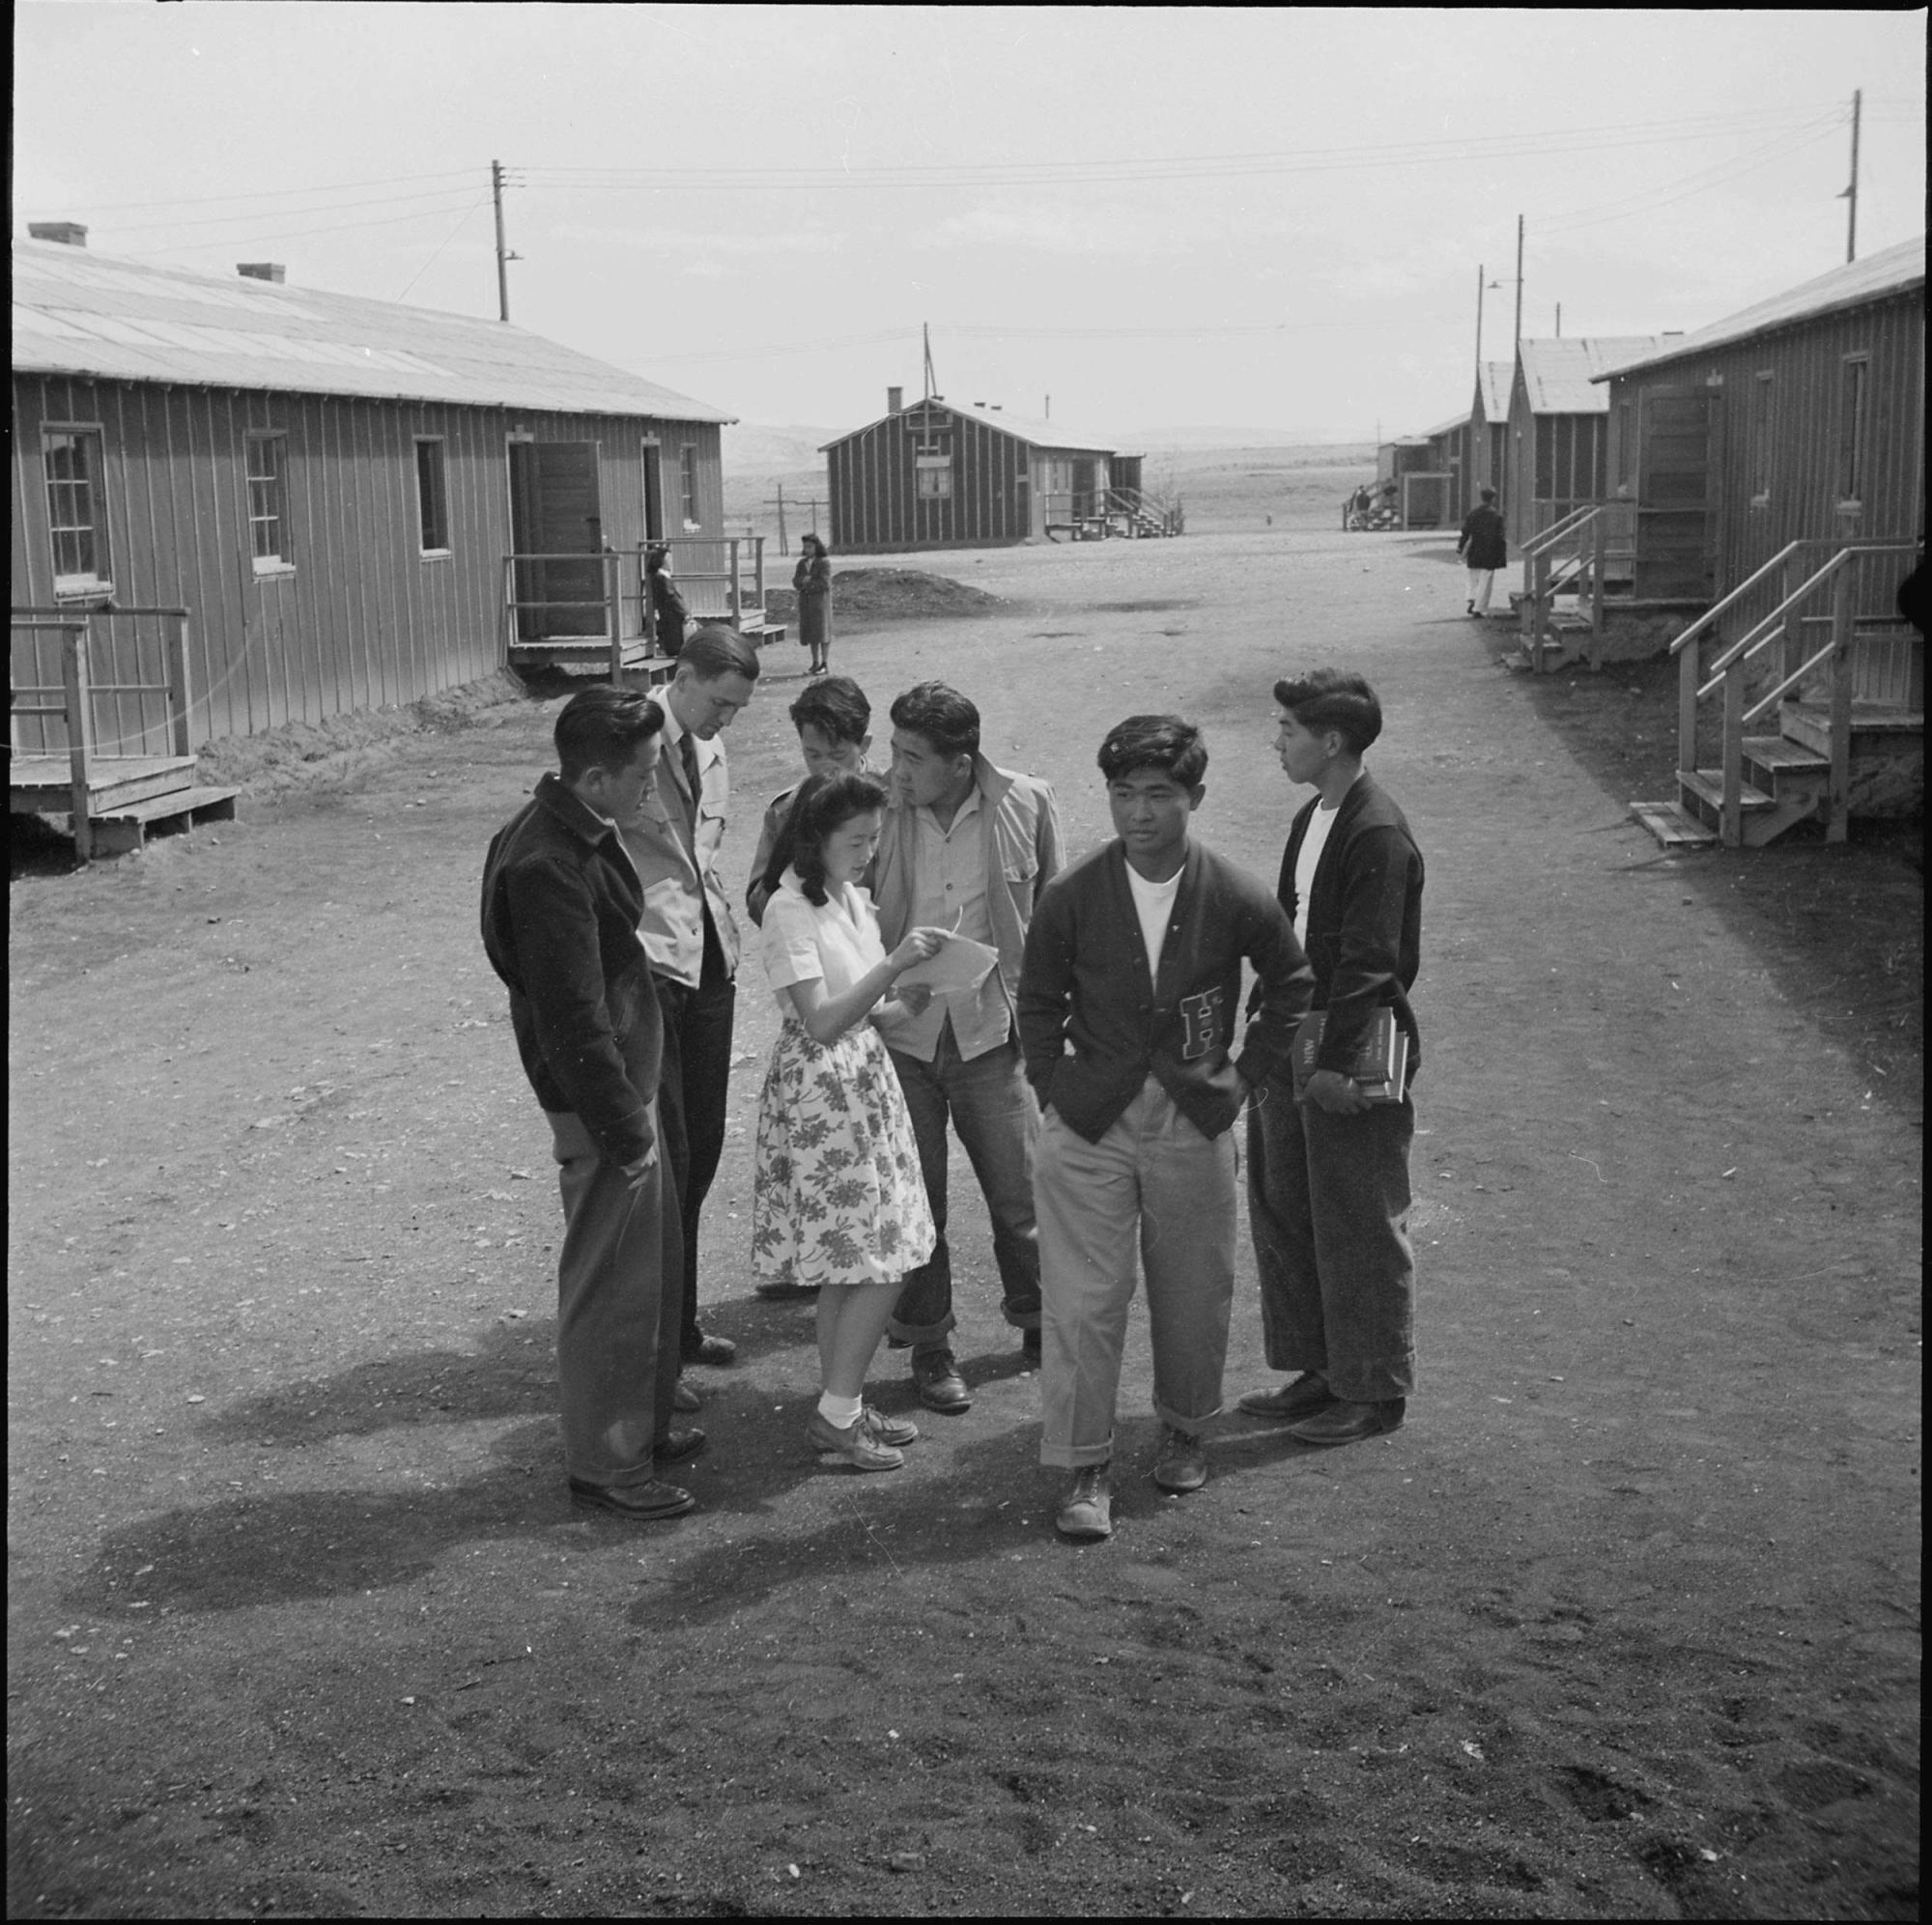 1943年6月、ワイオミング州ハートマウンテン強制収容所内の高校生たち。バラックと呼ばれる小屋の中が教室だった。出典:National Archives 